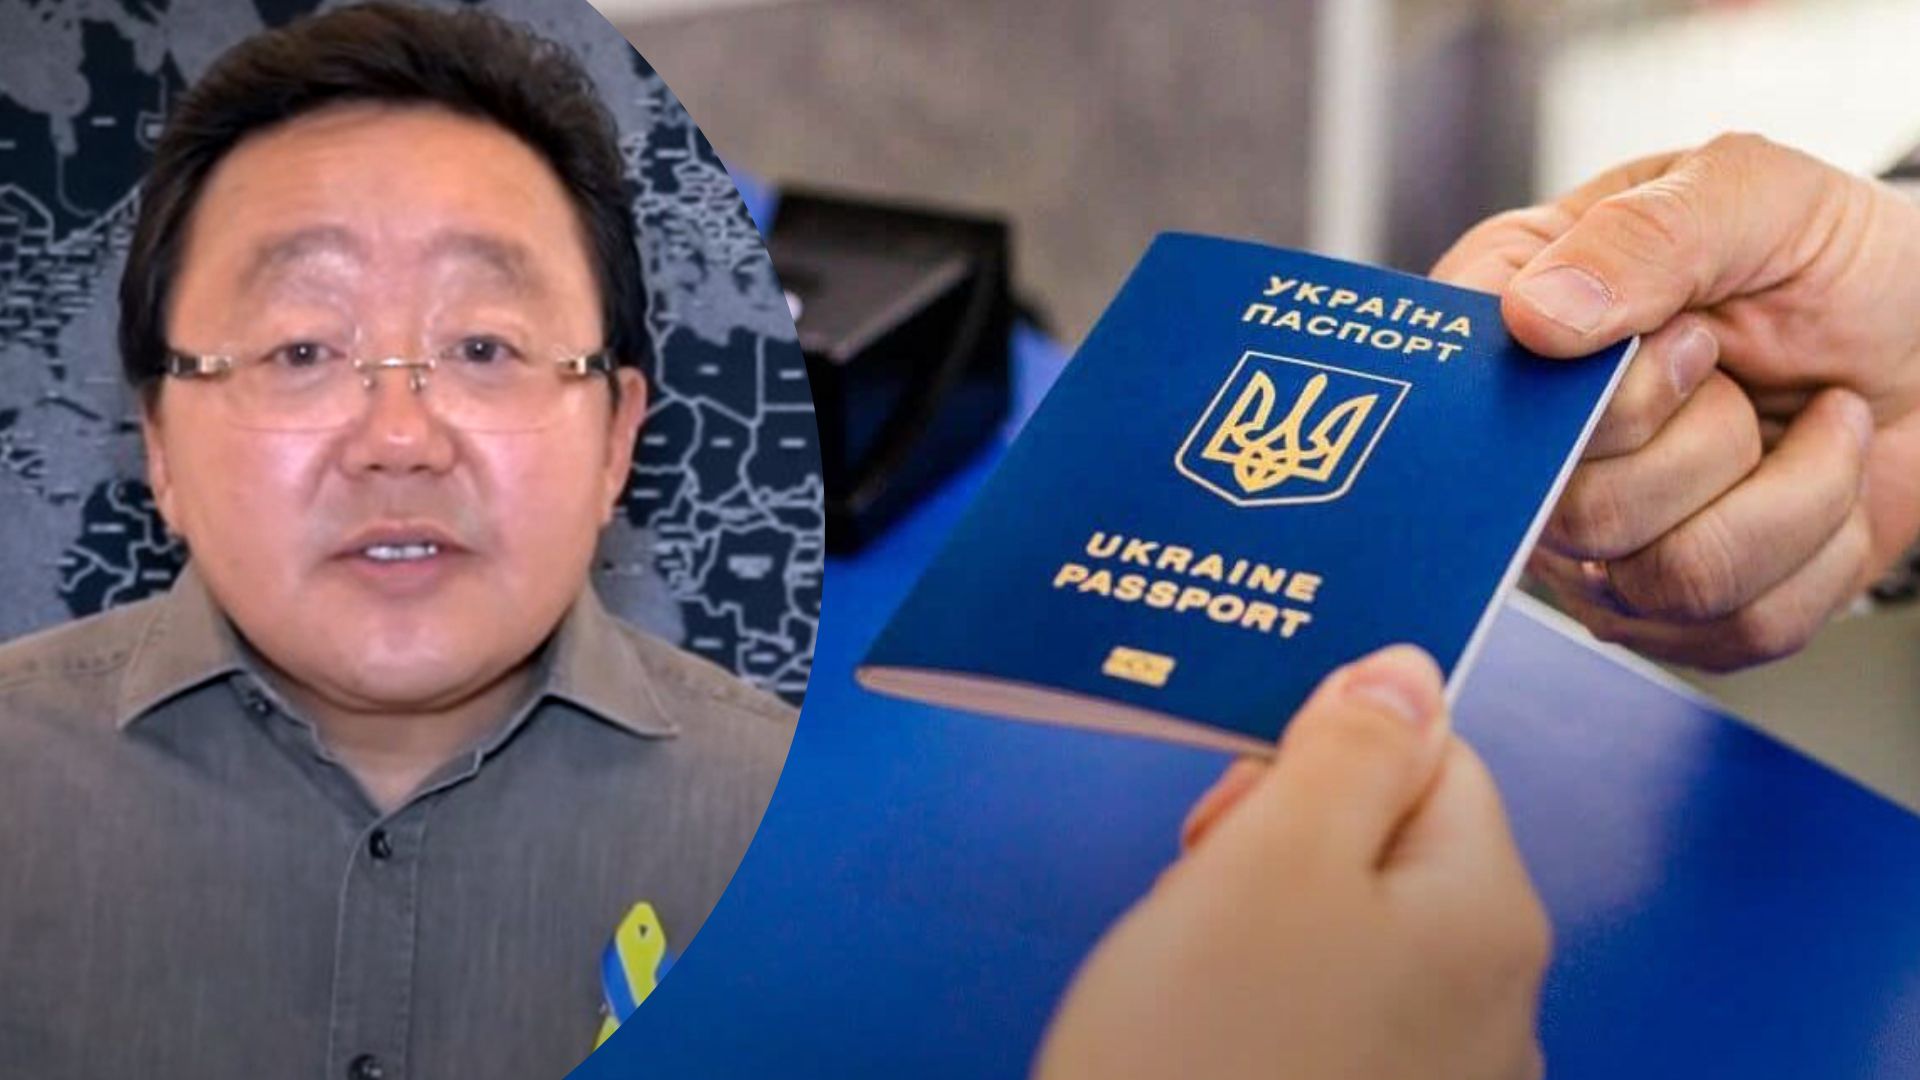 Елбегдорж вважає Український паспорт найпотужнішим зараз